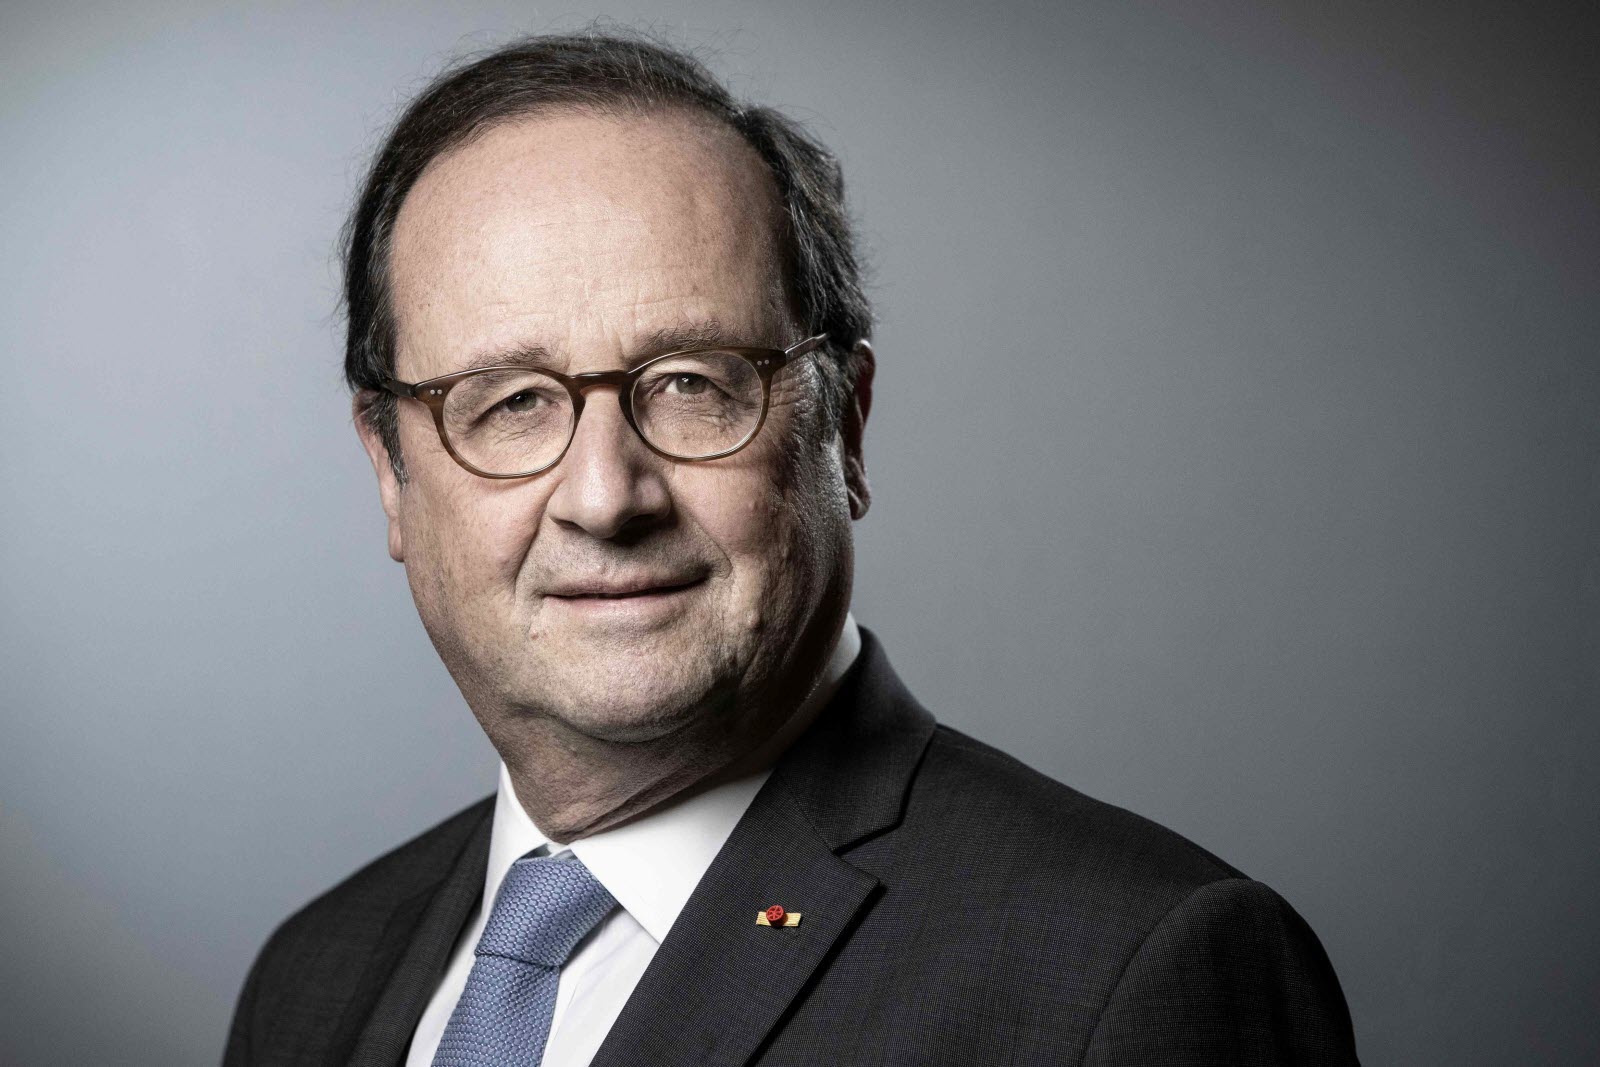 François Hollande candidat à la présidentielle de 2022 ? Ces confidences qui intriguent